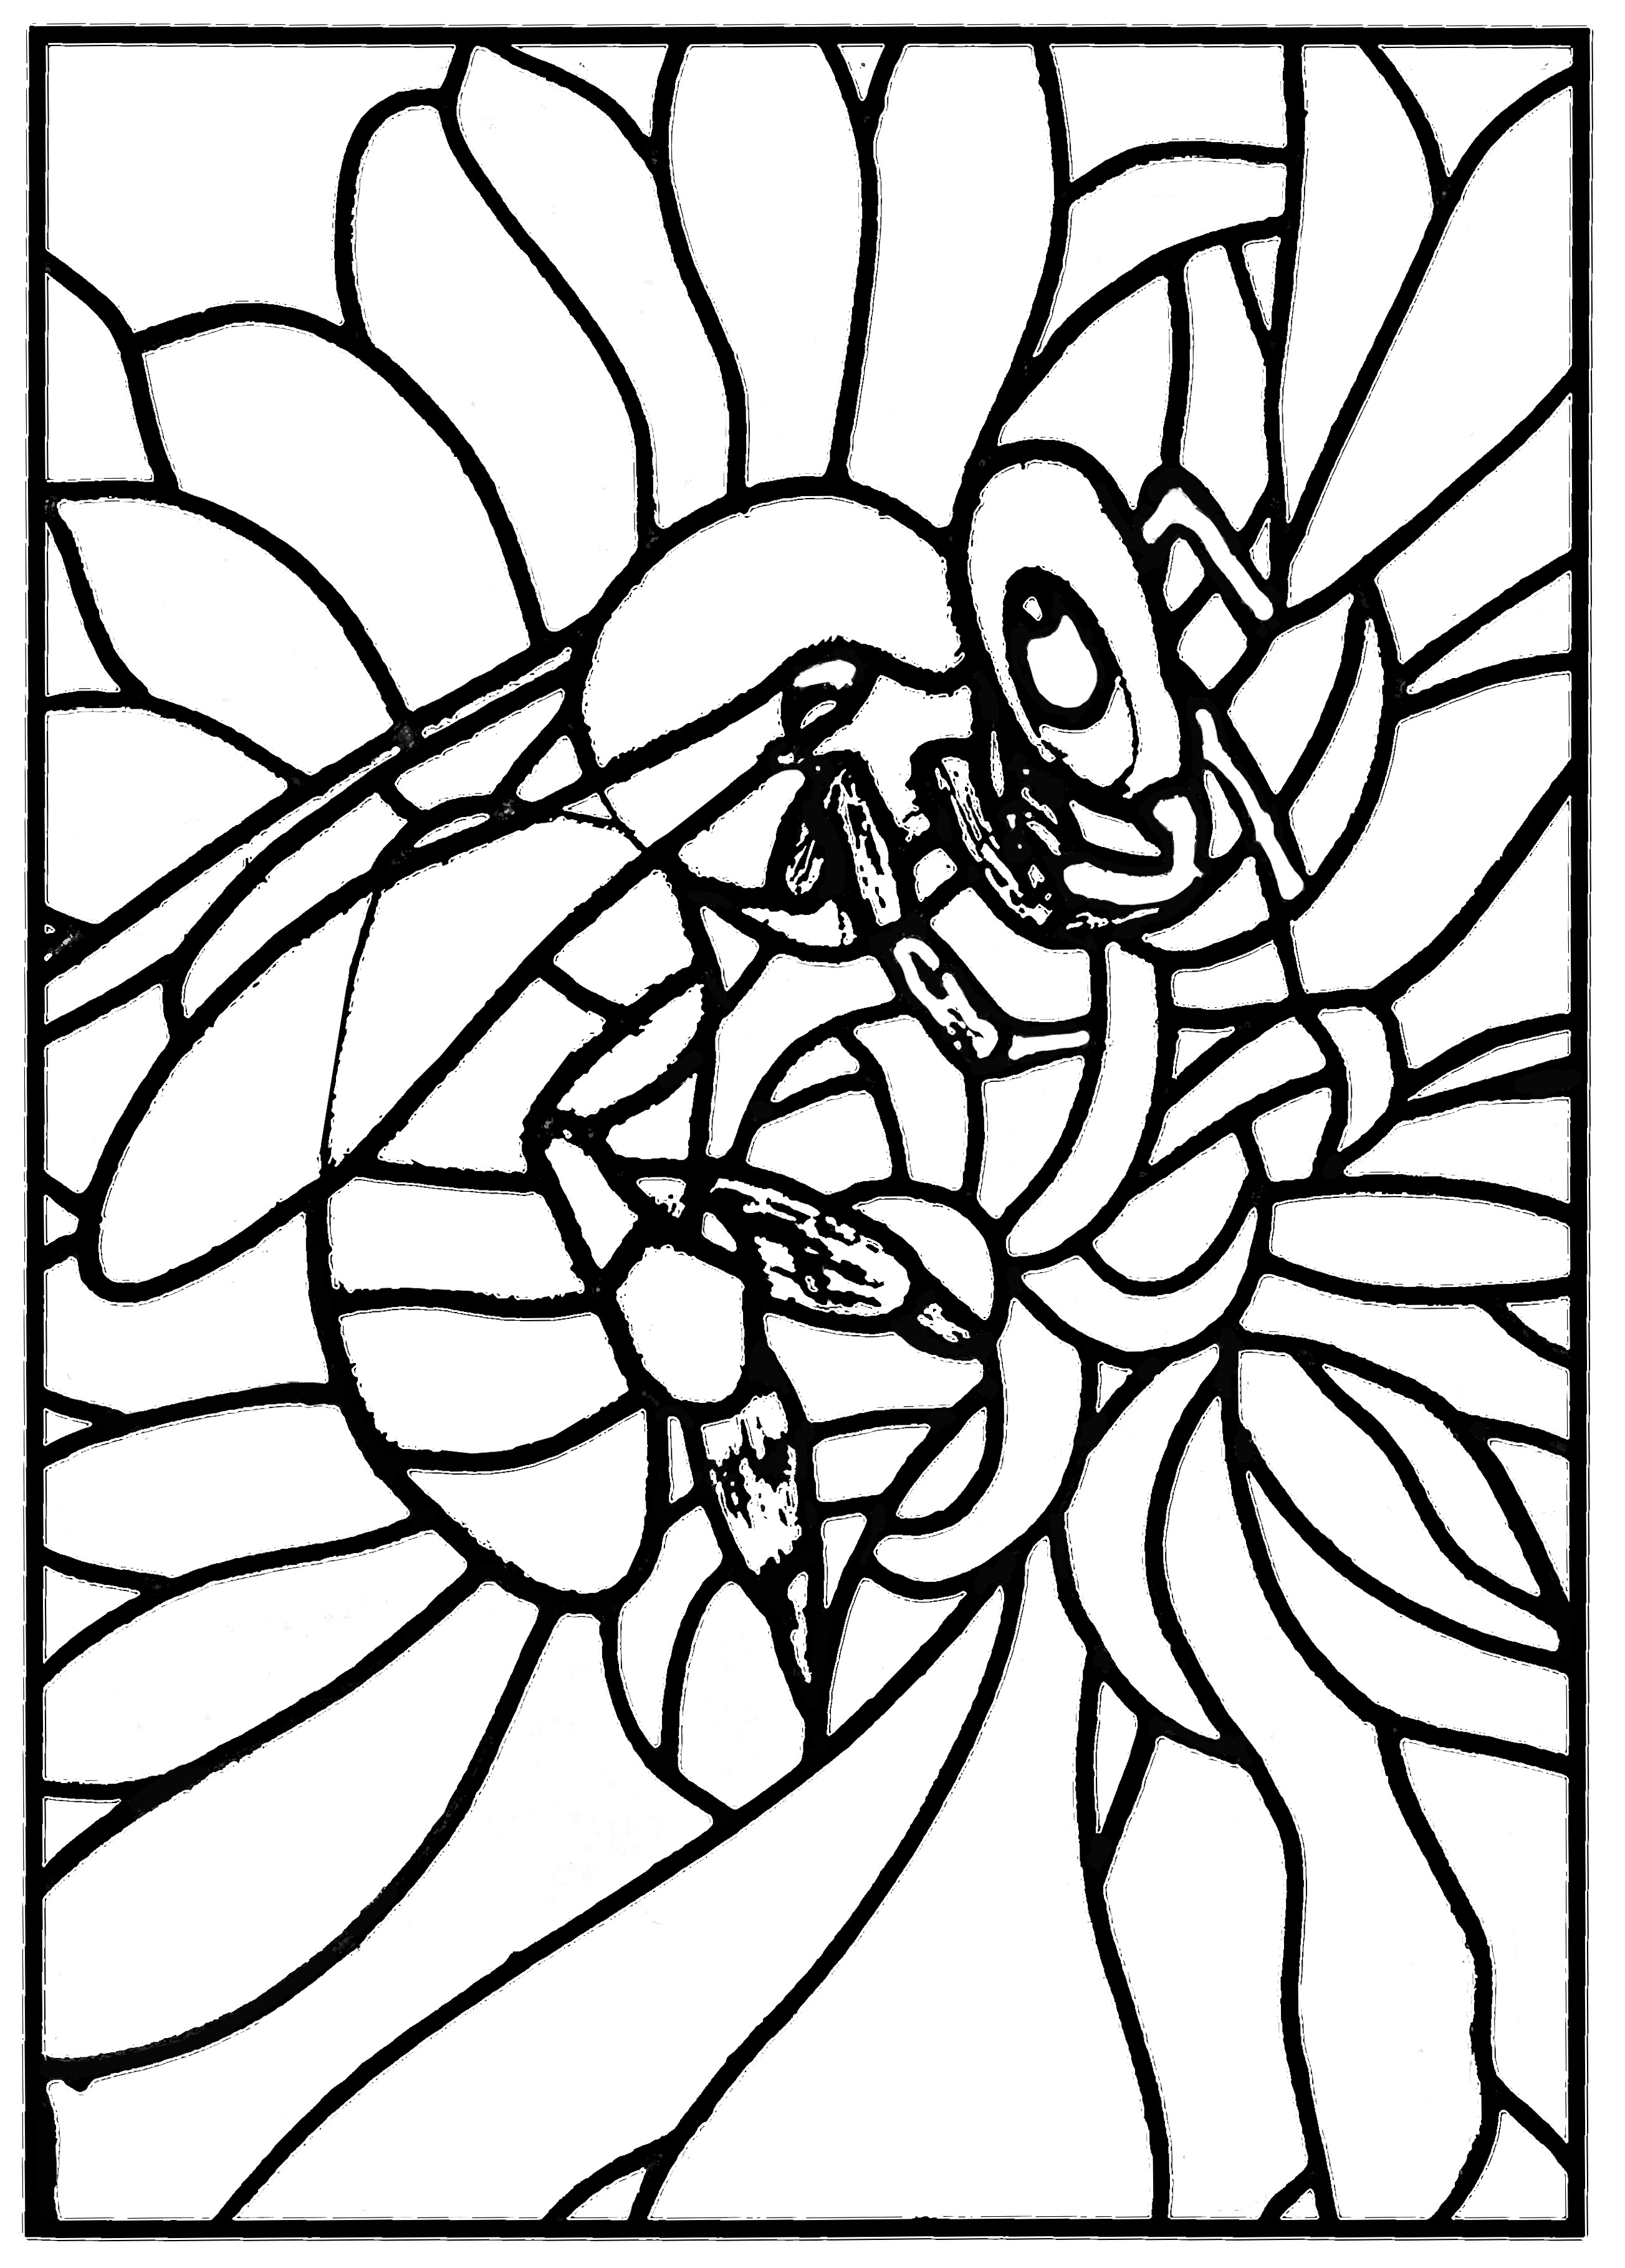 Un coloriage créé à partir d'un vitrail moderne représentant une abeille (Atelier JB Tosi, 2010)